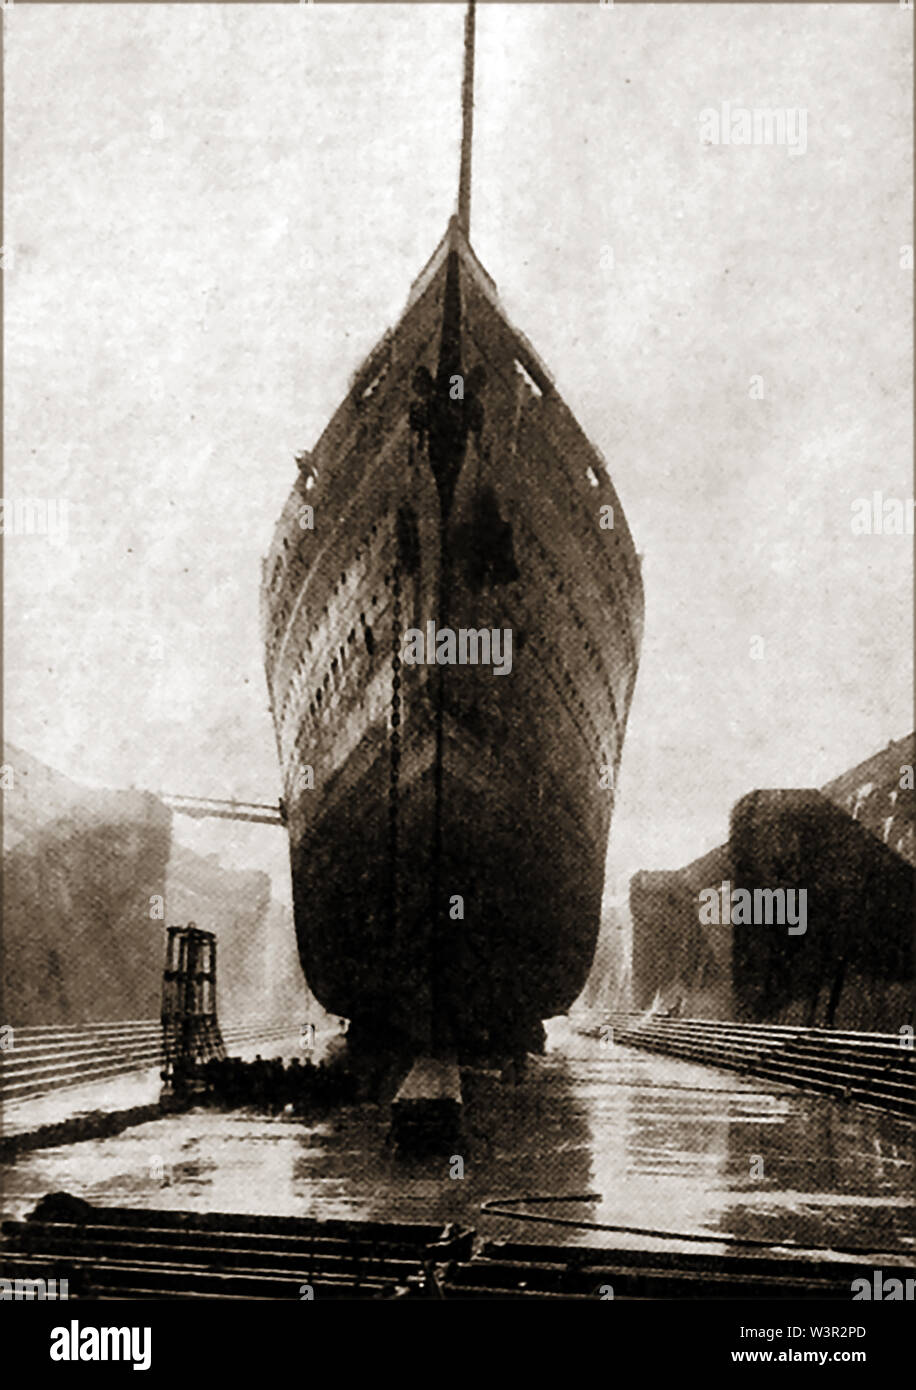 MAJESTIC /BISMARCK/ Nouvelle-calédonie - RMS Majestic était un fleuron de la White Star paquebot construit en 1914, le plus grand navire du monde jusqu'à la fin de SS Normandie en 1935. C'est vu ici dans l'ancienne gare du sud (le roi George V) cale sèche en 1934 et après qu'elle a été sauvée de la casse par la Royal Navy, la formation et le bateau HMS Nouvelle-calédonie avant de prendre feu en 1939 et le naufrage. - Elle a été initialement lancé en 1914 comme le nord de la ligne Hambourg SS Bismarck Banque D'Images